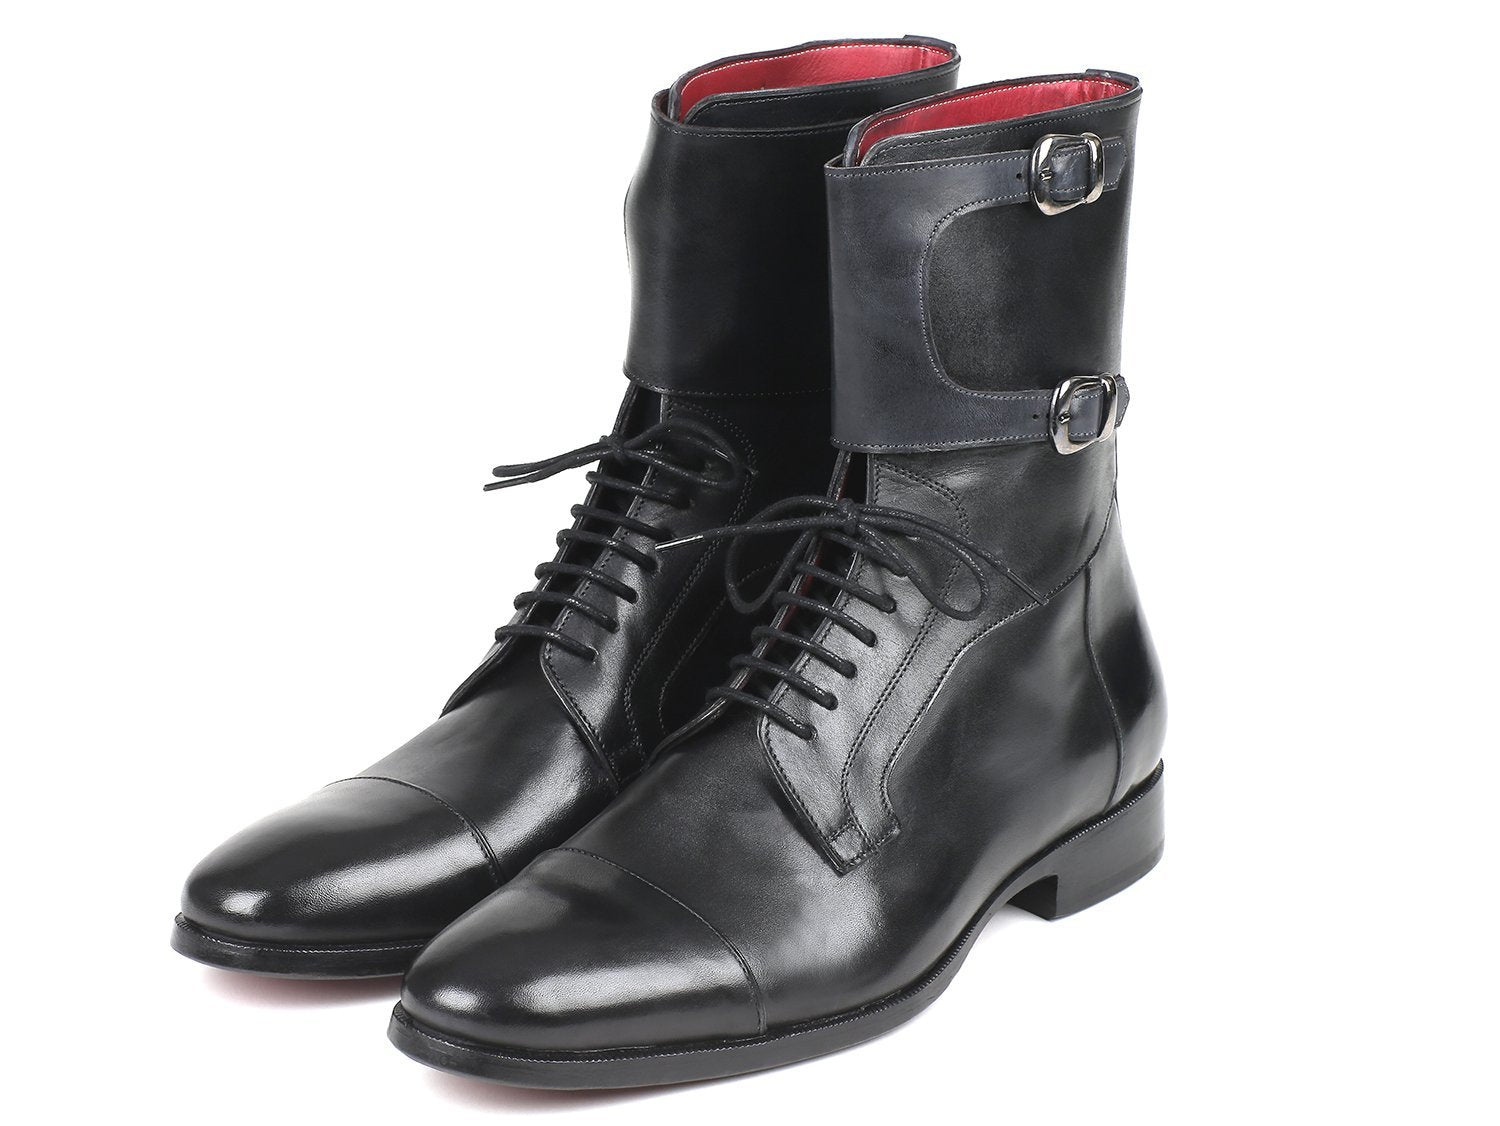 TEEK - Paul Parkman High Black Calfskin Boots SHOES theteekdotcom   